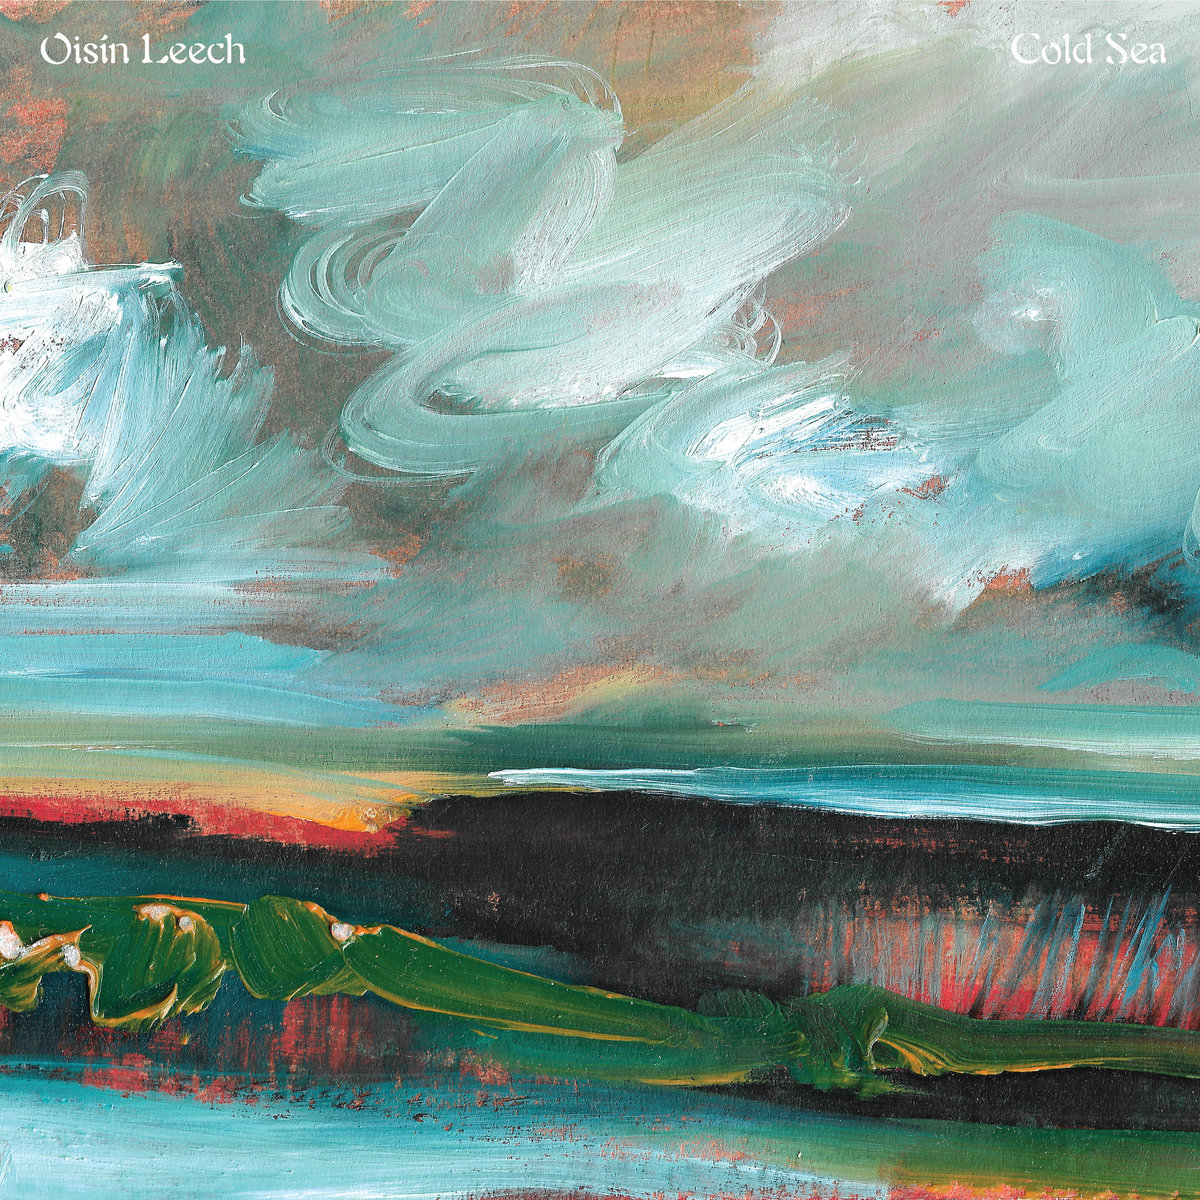 Listen Up – Oisin Leech – Cold Sea